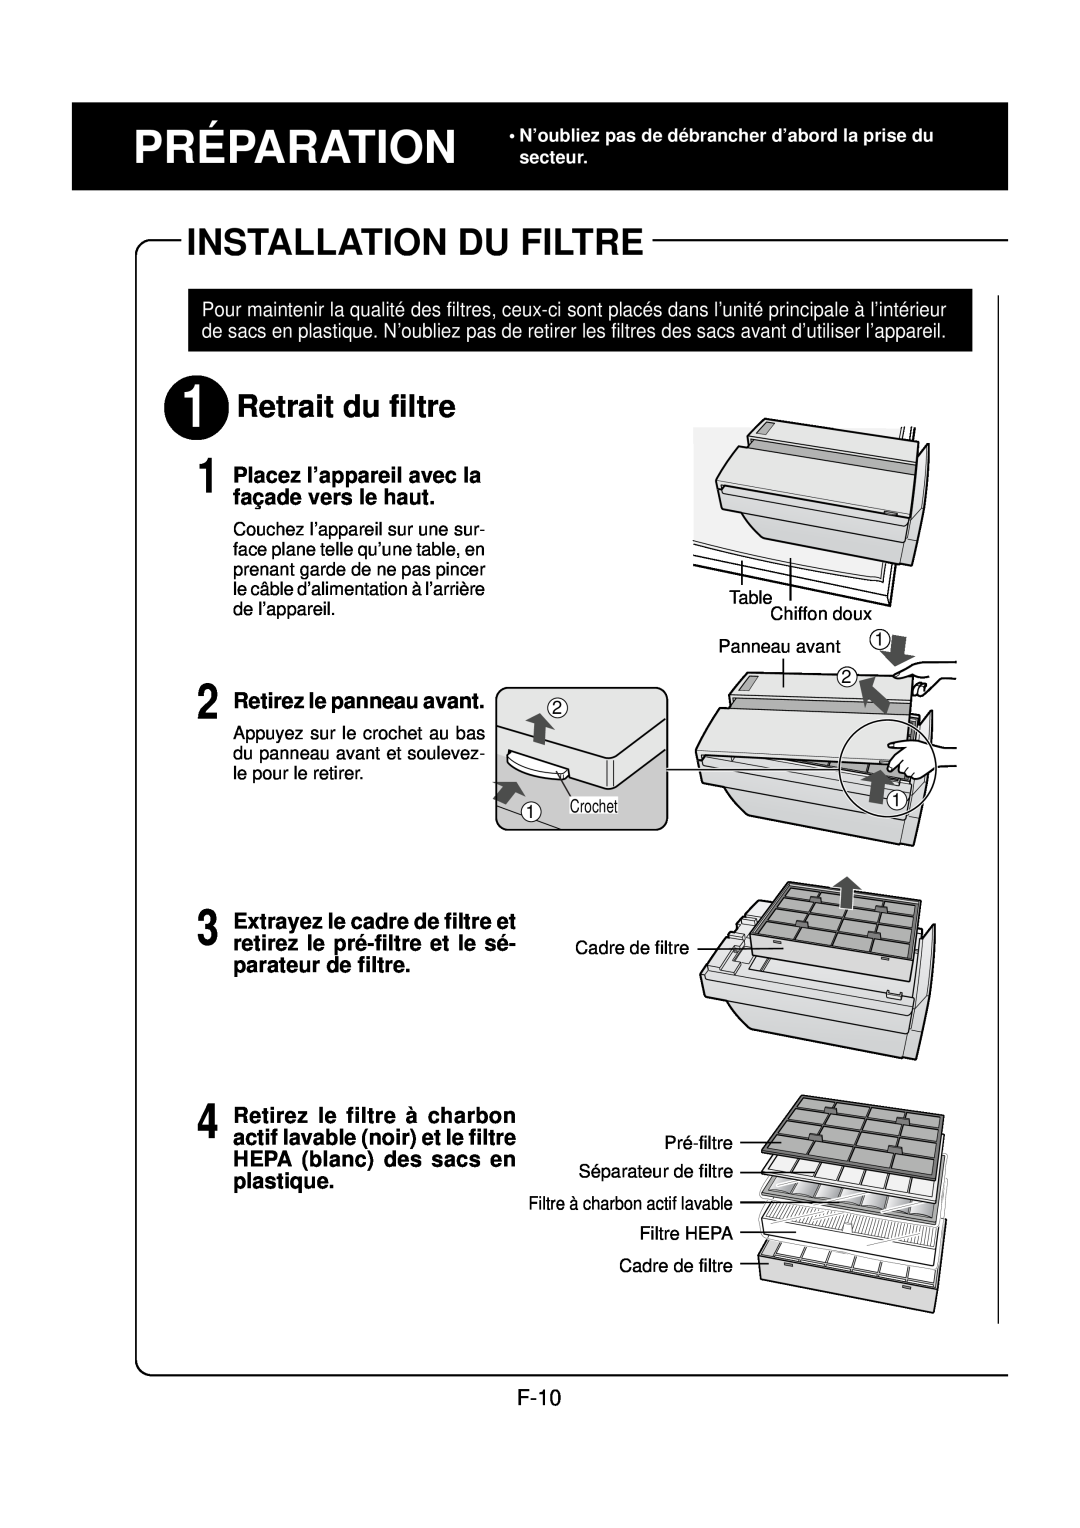 Sharp FP-N60CX Installation Du Filtre, Retrait du filtre, Préparation, Placez l’appareil avec la façade vers le haut, F-10 